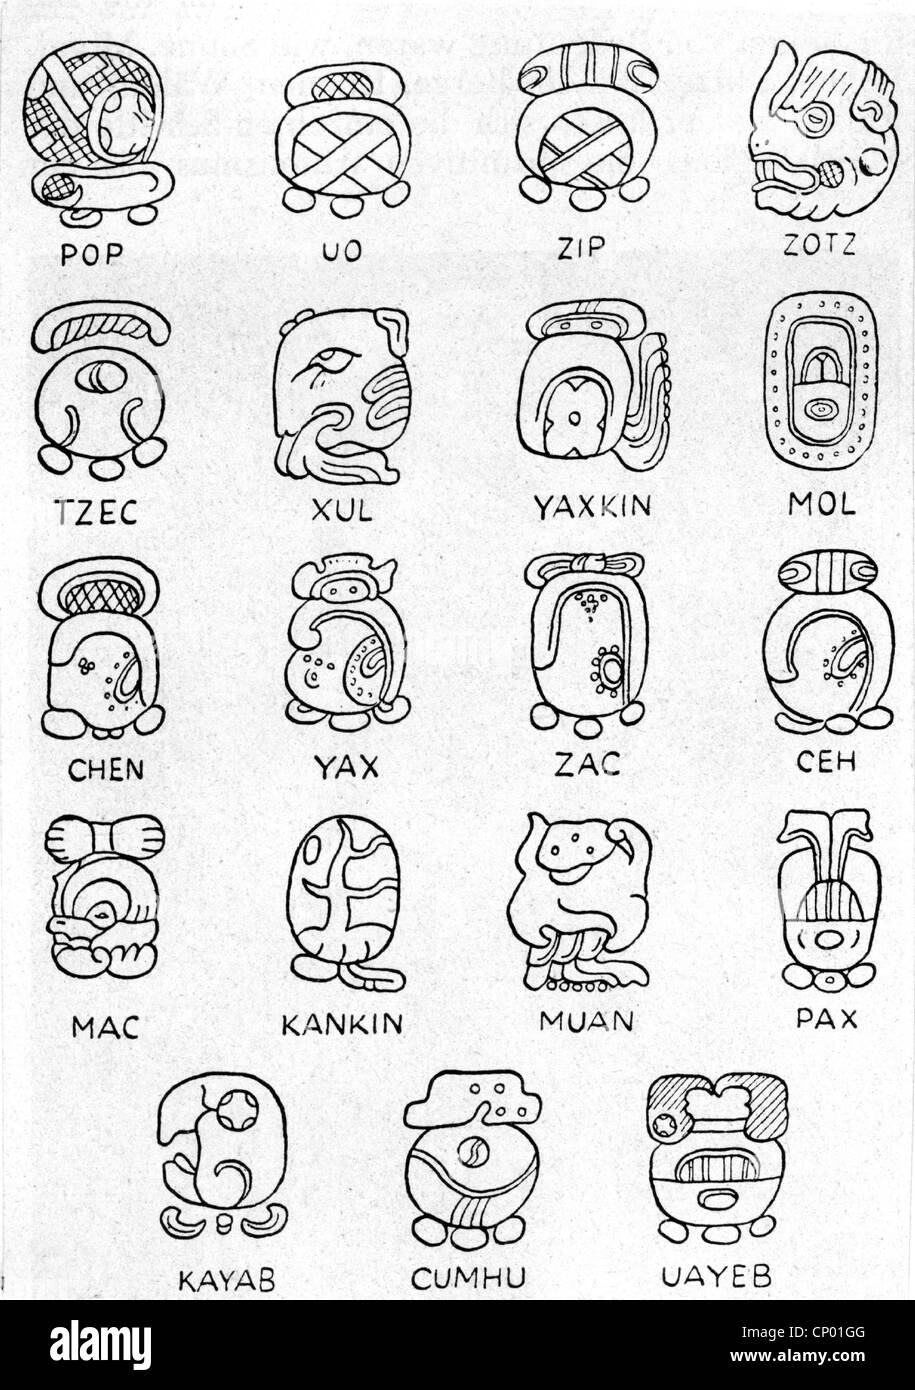 Writing, script, South America, Maya, les symboles du mois des Mayas, (selon J.E. Thompson/Civilization of the Mayas, 1927), caractère, caractères, signe, signes, pictogramme, tonalamatl, alamatl, pictogramme, pictogramme, pictogramme, pictogrammes, pictogrammes, hiéroglyphes, hiéroglyphes, hiéroglyphes, Maya, culture maya, Amérique du Sud, mois, mois, calendrier, calendriers historiques, années 1920, droits supplémentaires, libertés-siècle non disponibles Banque D'Images